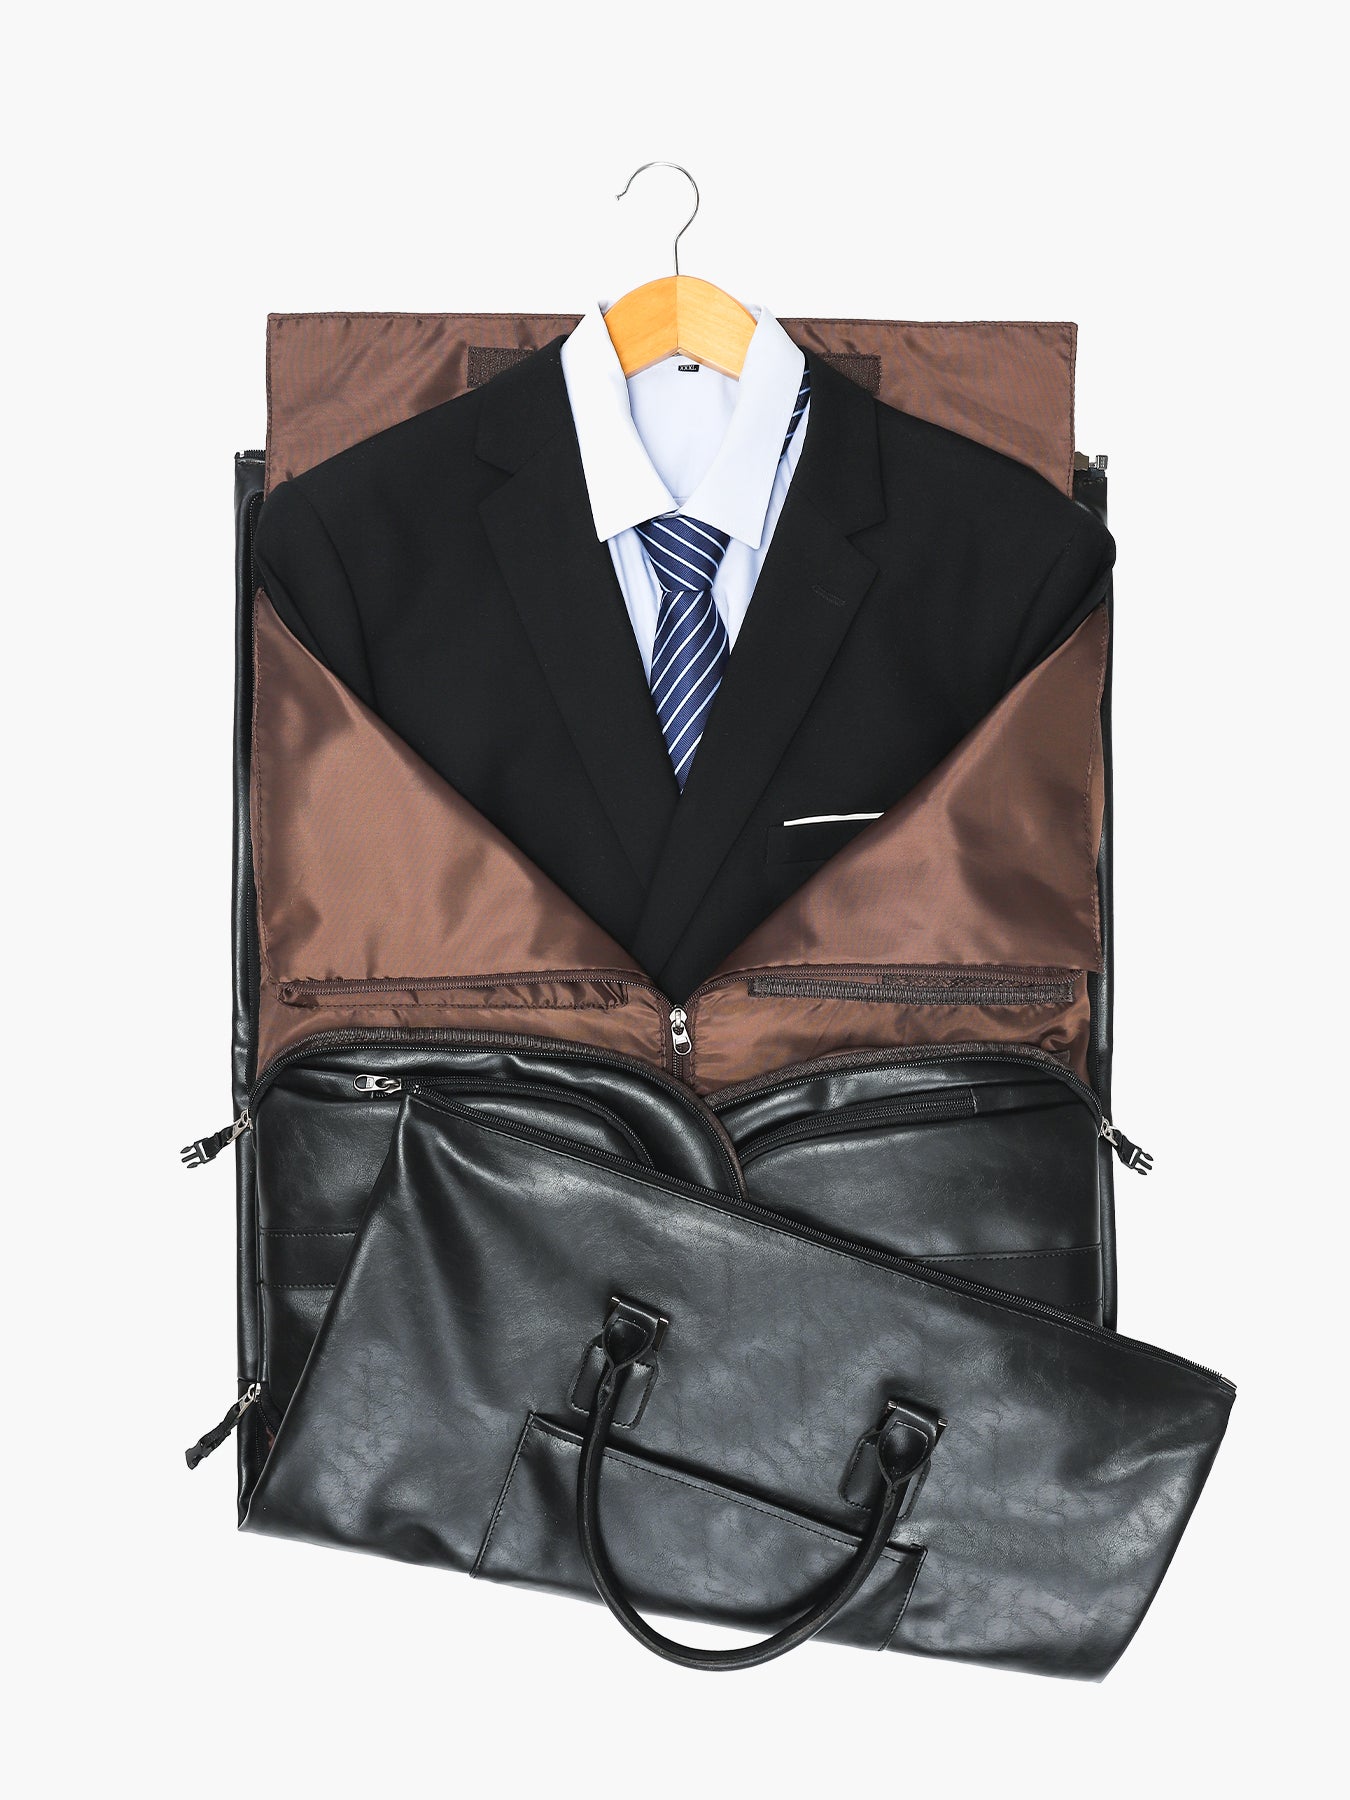 Modoker Vintage Laptop Backpack for Women Men, Convertible Garment Bag –  SHANULKA Home Decor